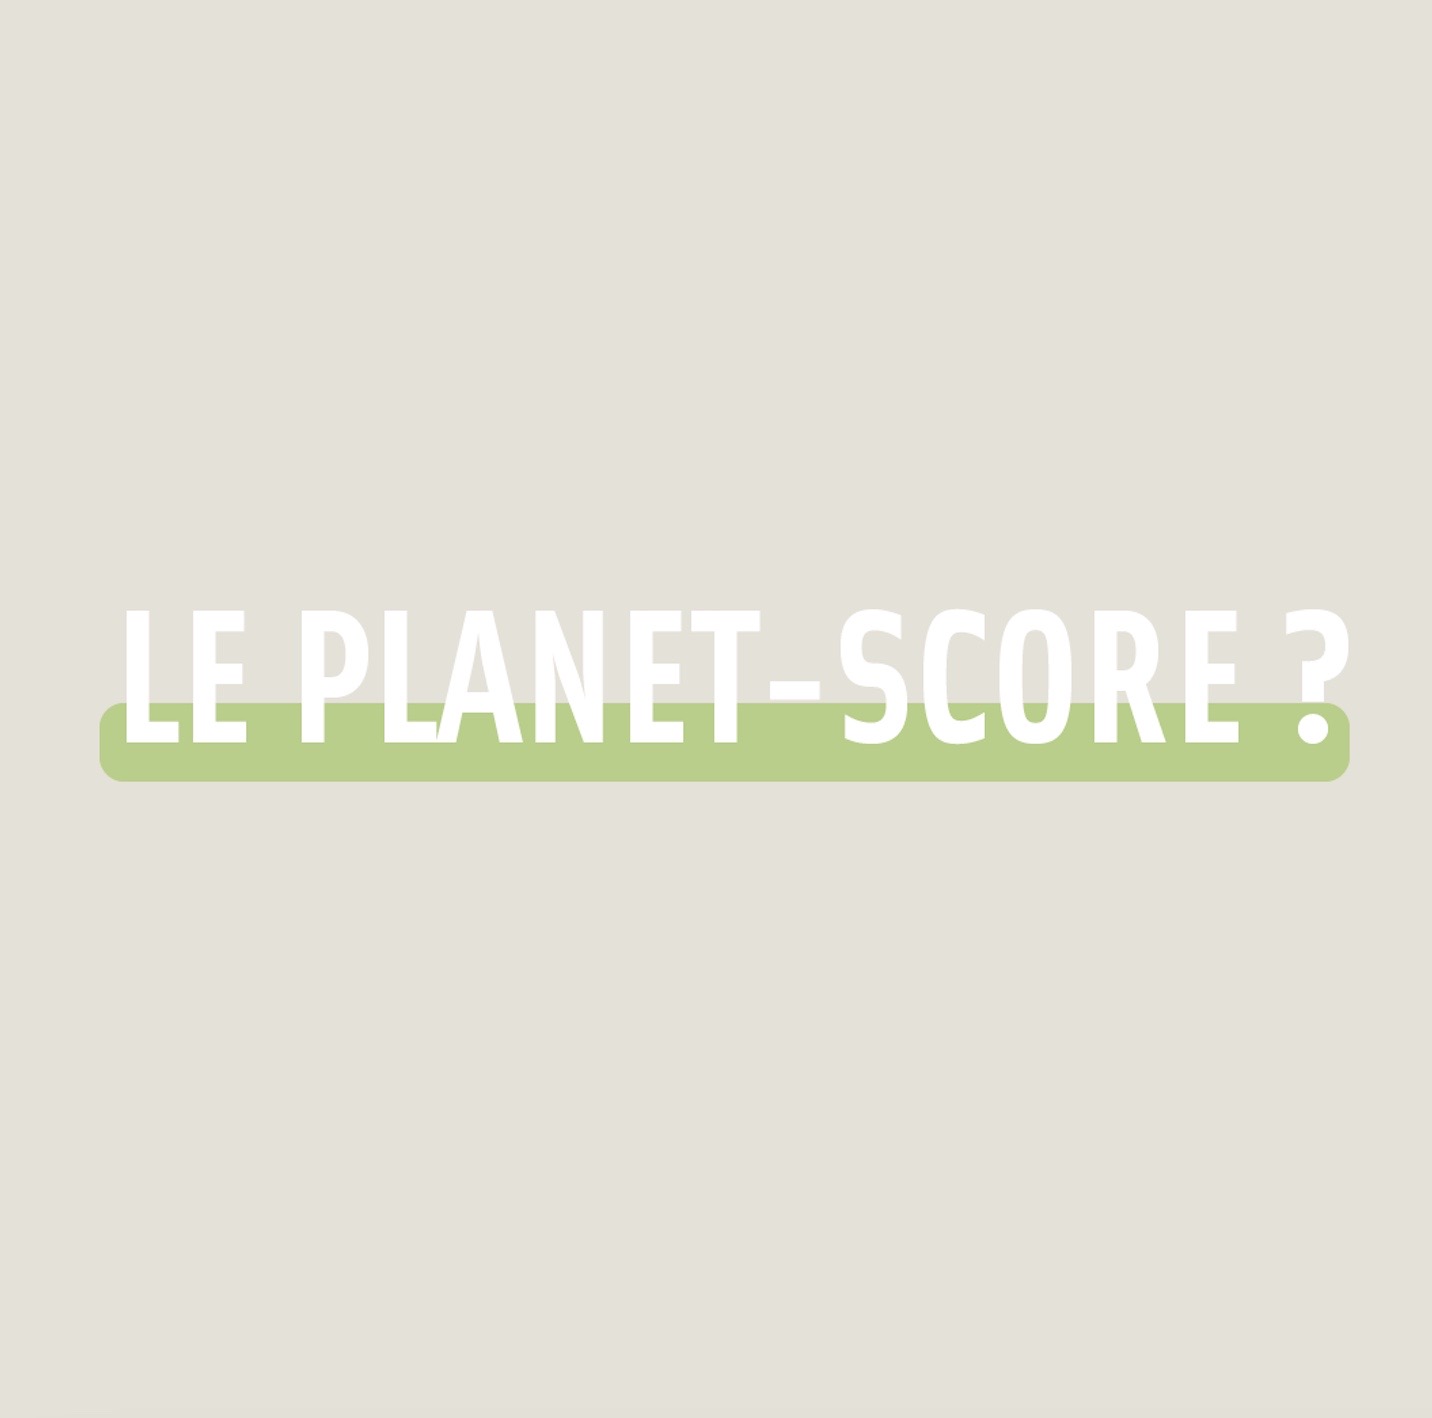 Le planet-score